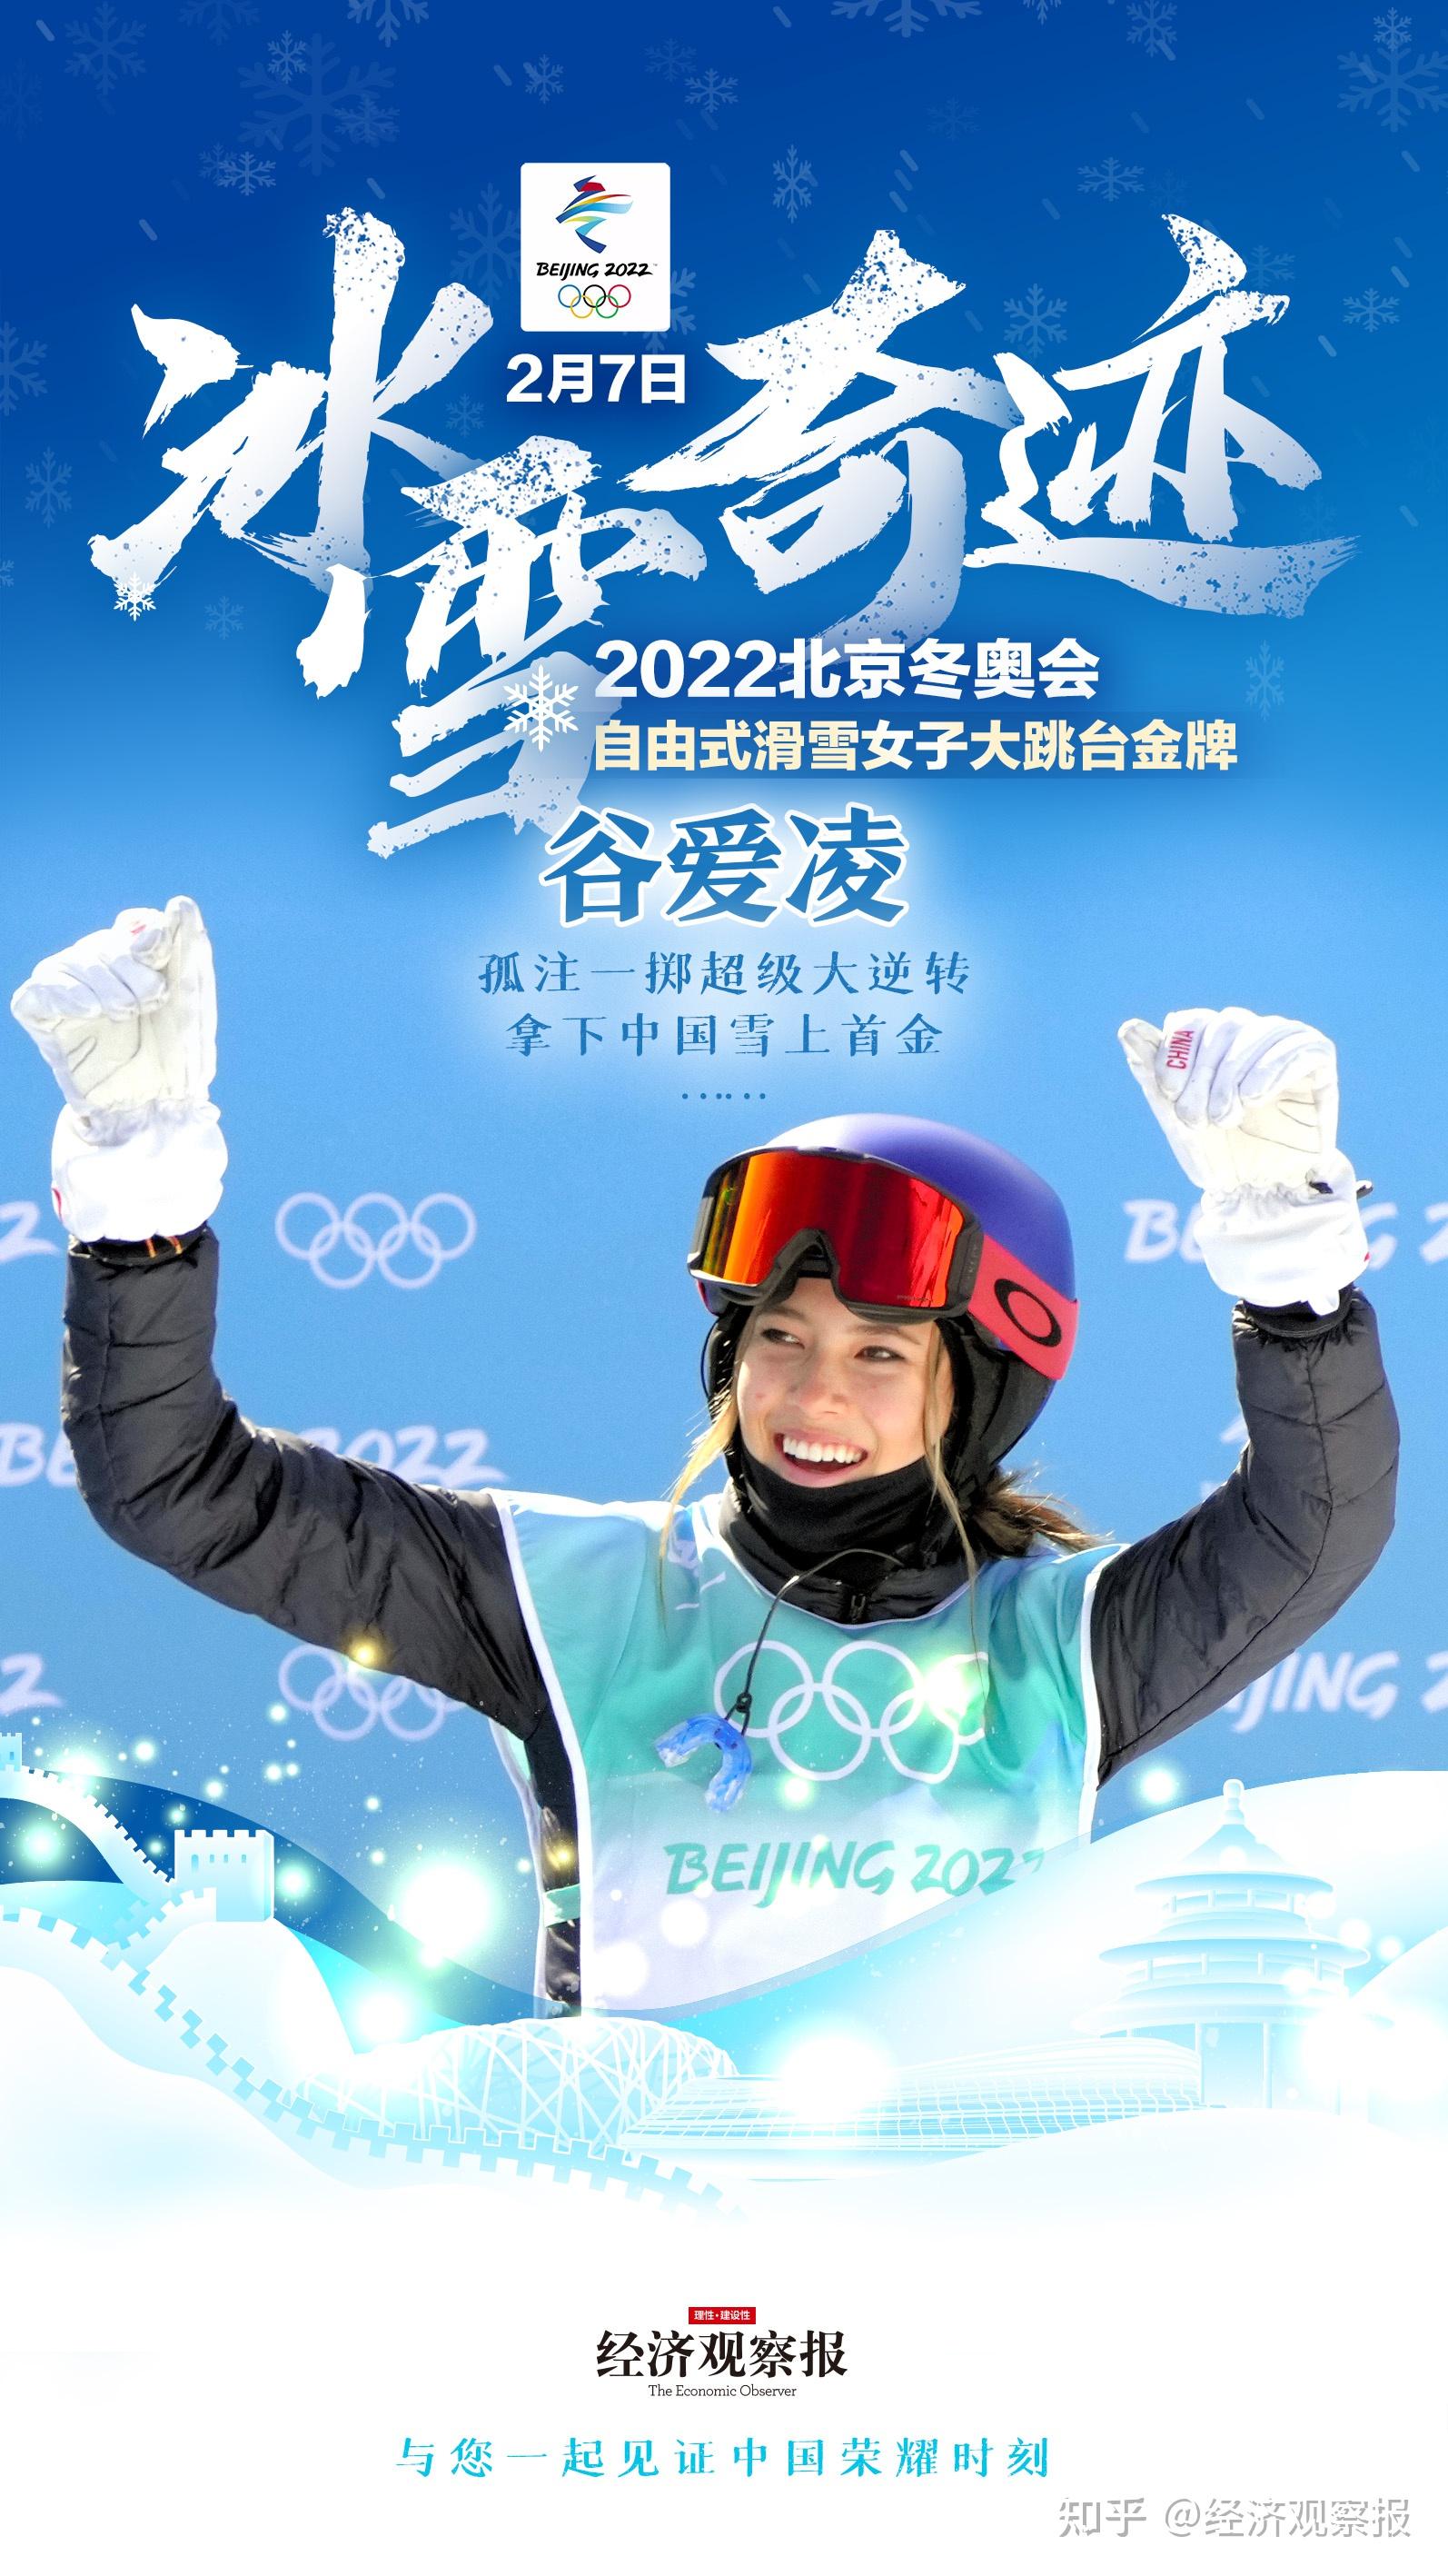 北京冬奥会自由式滑雪女子大跳台决赛谷爱凌逆转夺中国第3金如何评价